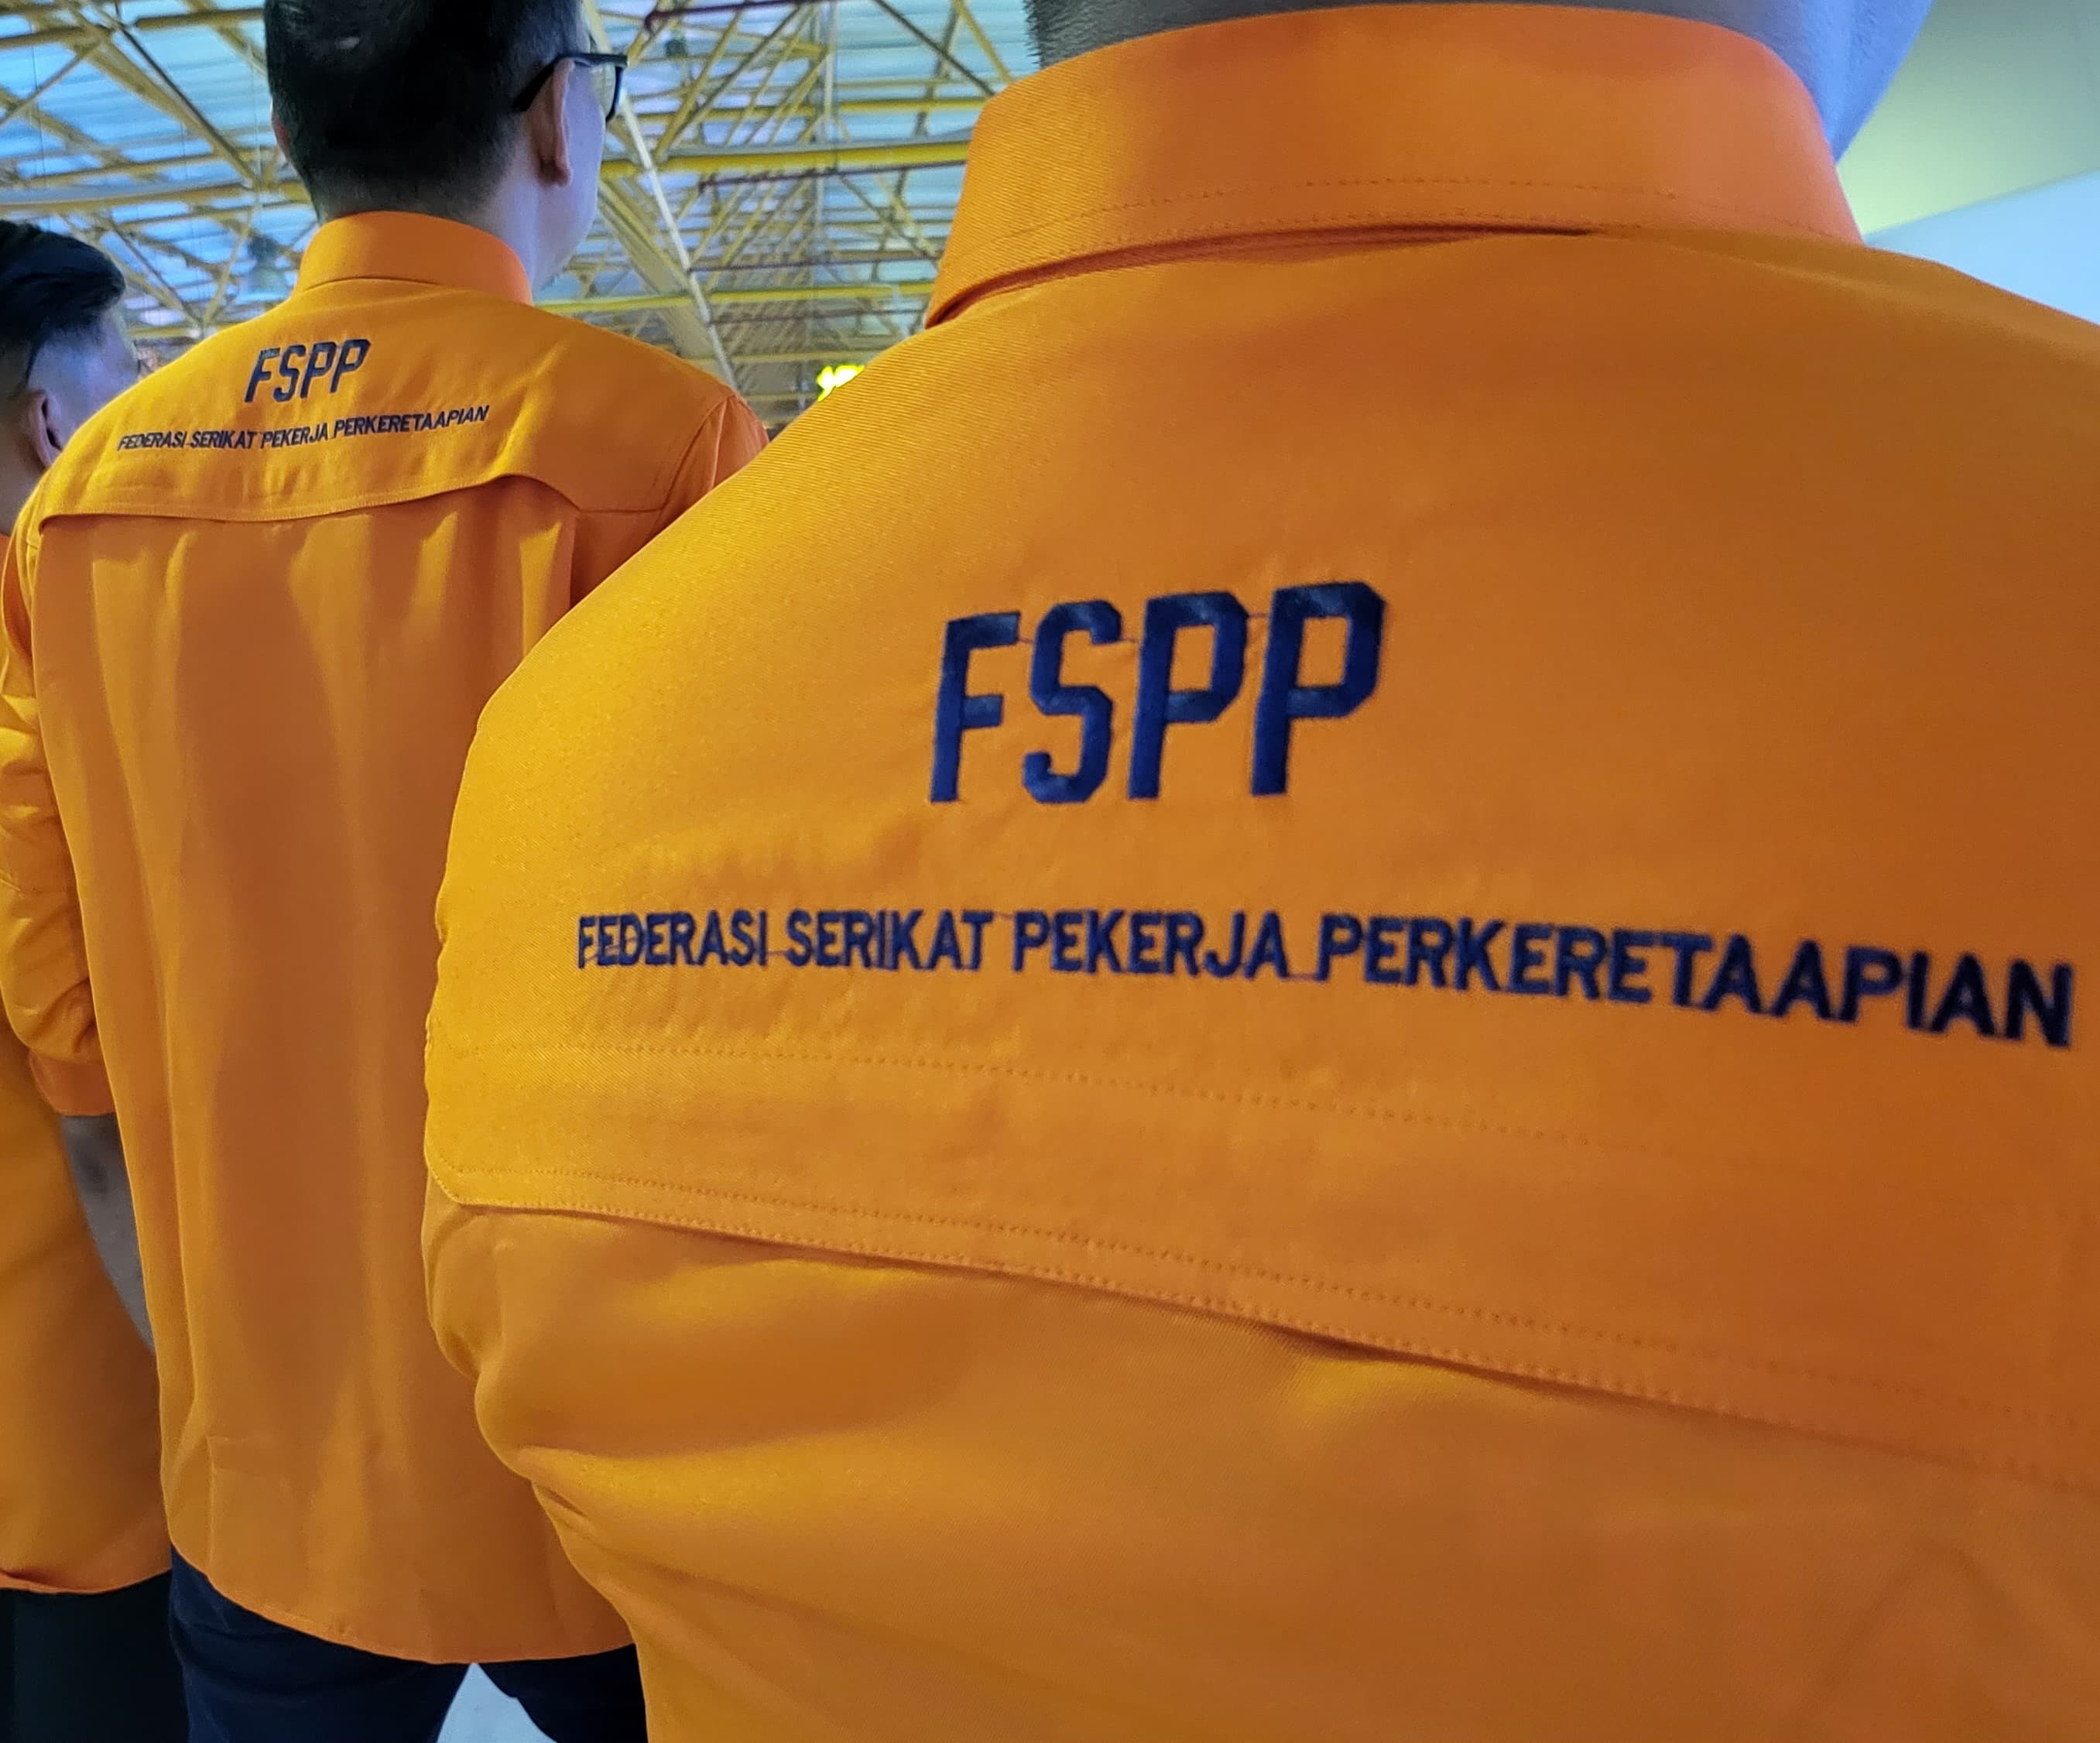 Federasi Serikat Pekerja Perkeretaapian Sayangkan Pernyataan Menhub, Terkait Insiden Laka 2 KA di Bandung